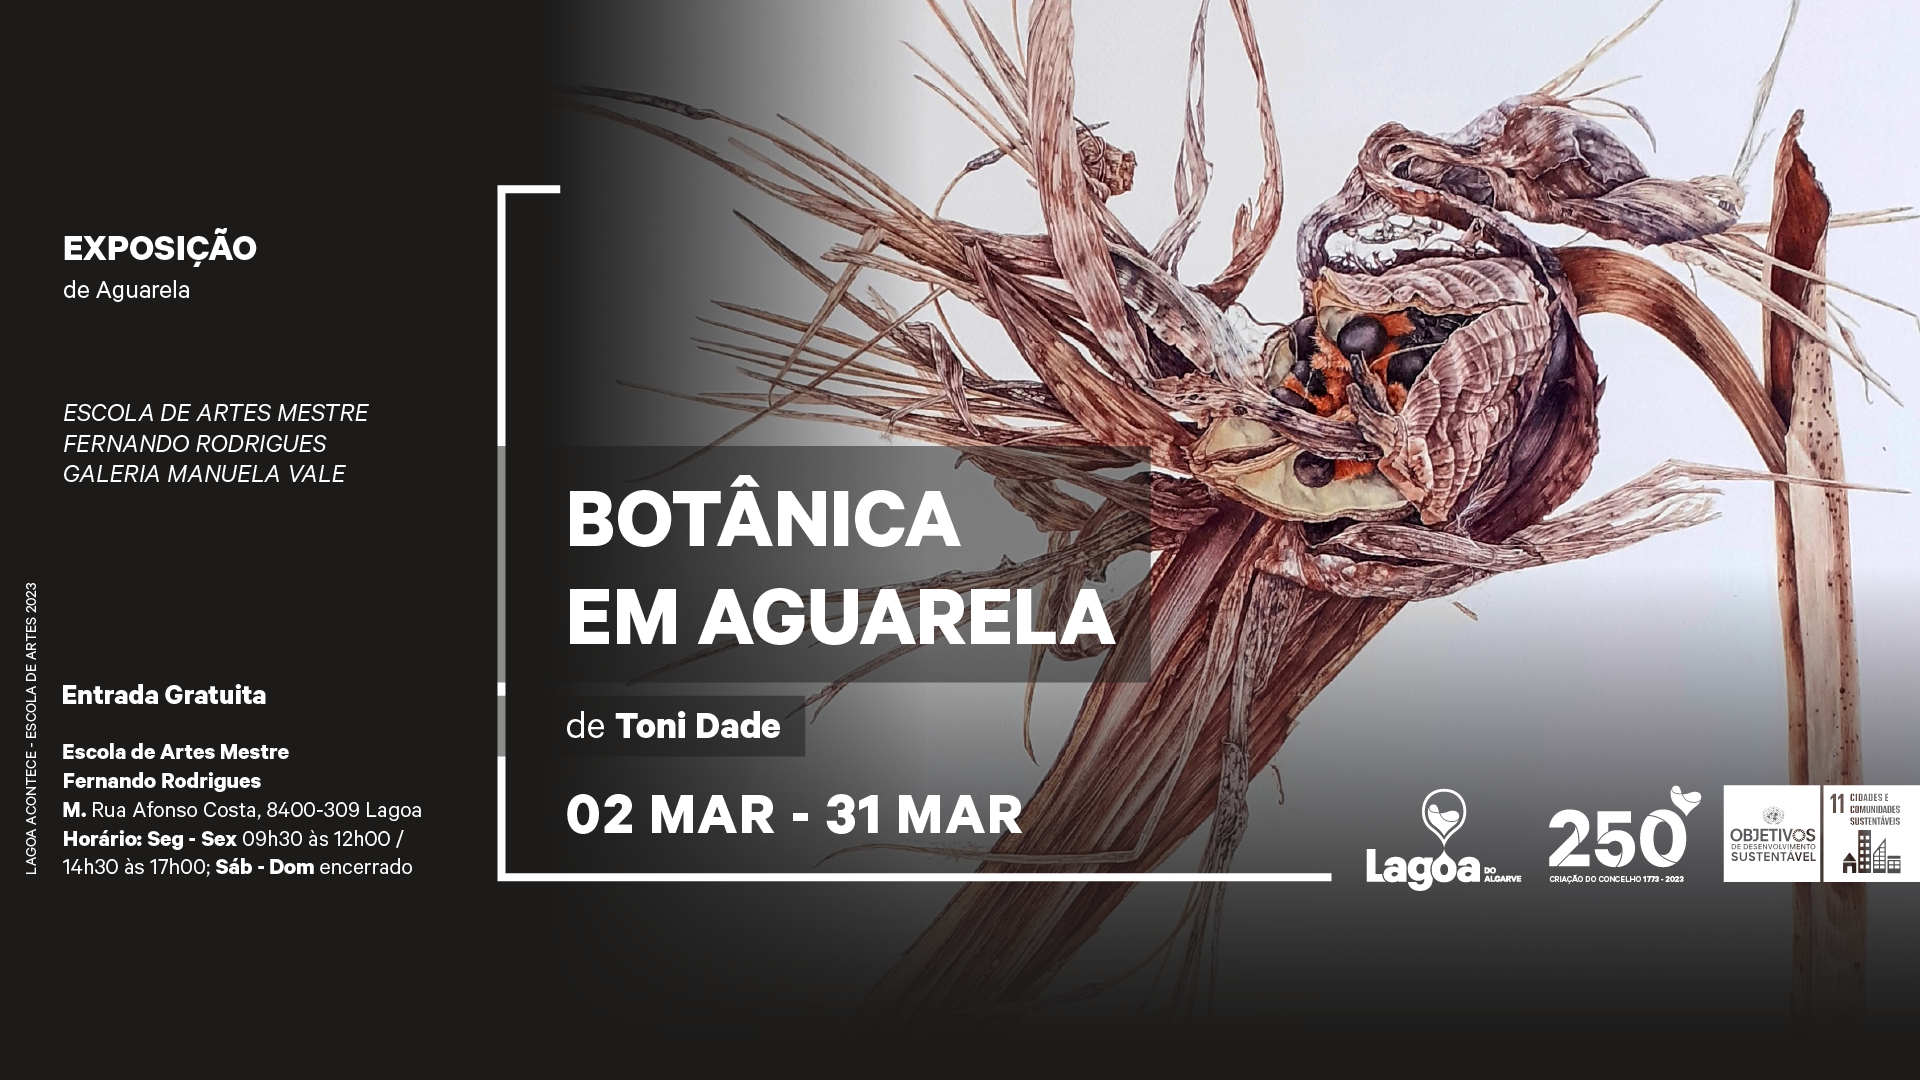 Exposição | Botânica em Aguarela | Exposição de Toni Dade